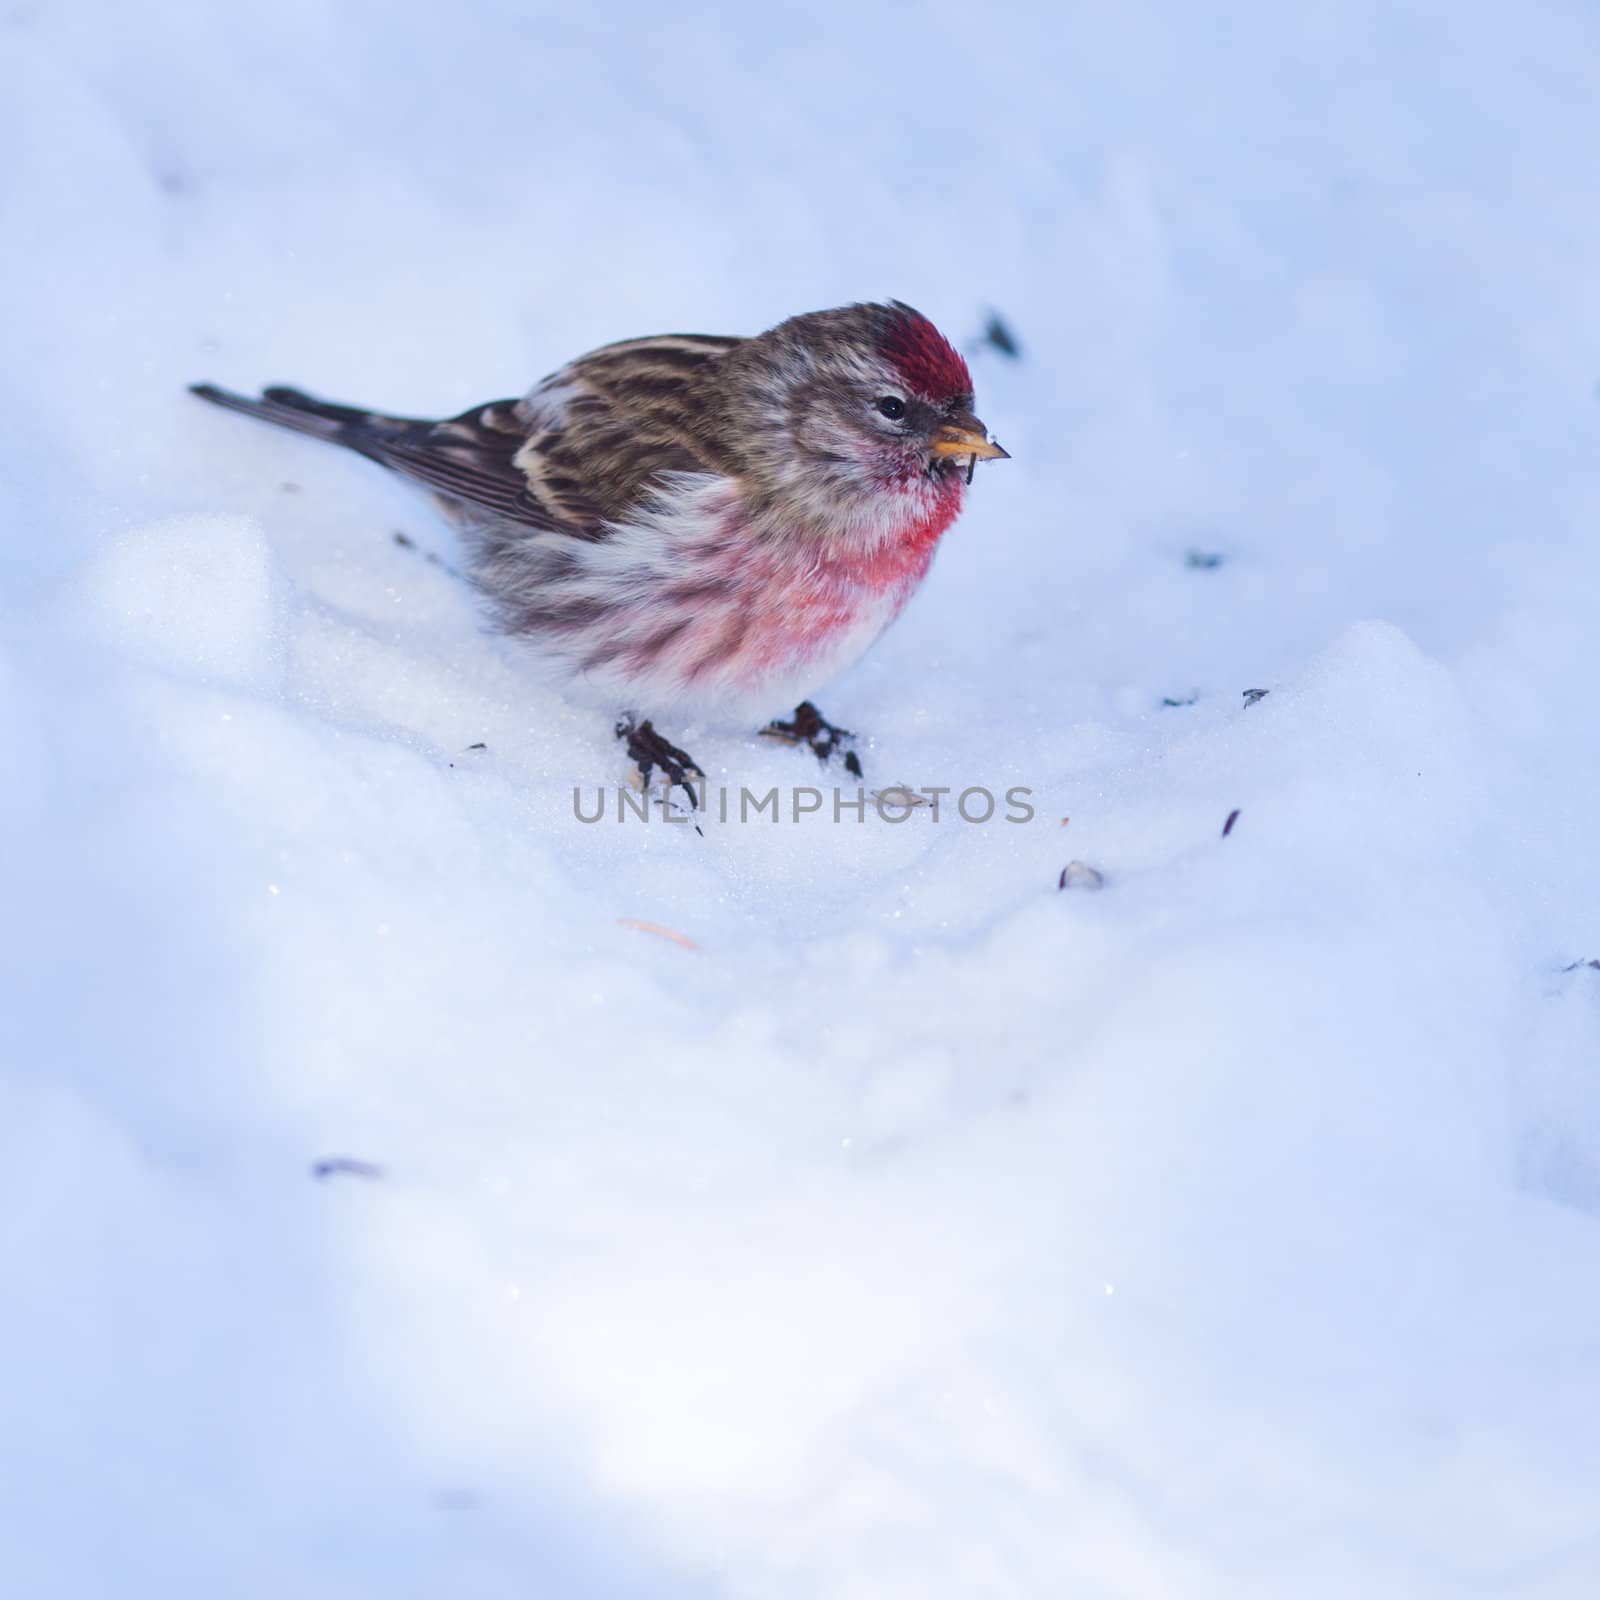 Common redpoll Carduelis flammea small passerine bird feeding on seeds on snowy ground